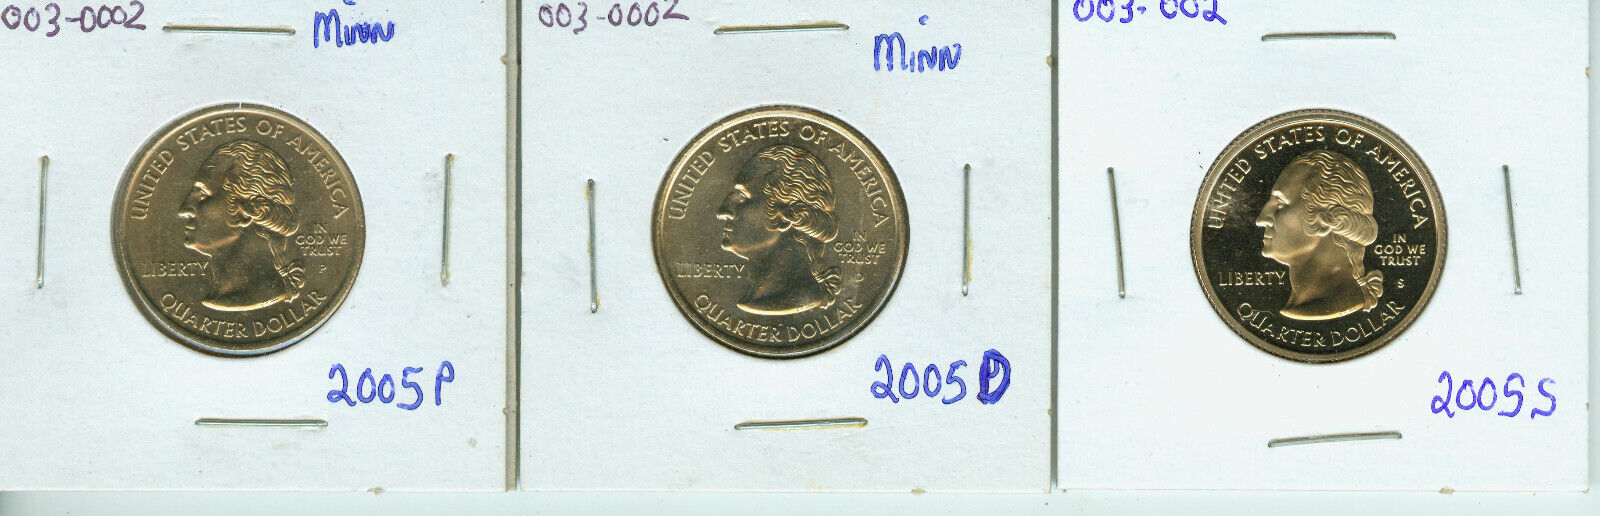 2005-p D & S Mints Minnesota Quarters One Each Total (3) Unc/bu & Proof